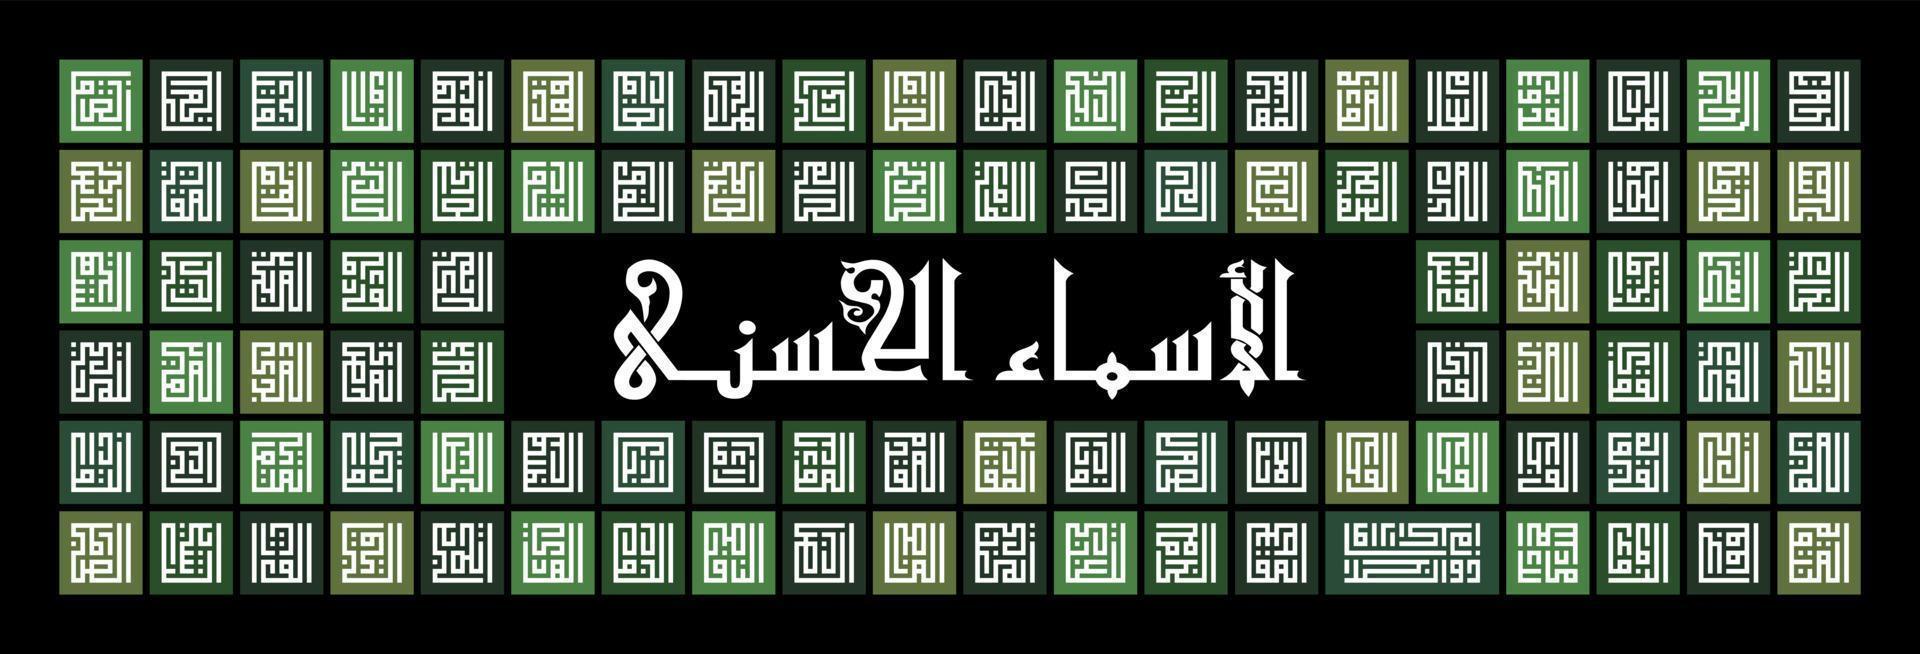 calligraphie arabe 'asmaul husna' '99 noms d'allah' dans le style kufi avec motif carré vert sur fond noir. idéal pour la décoration murale de la maison. vecteur